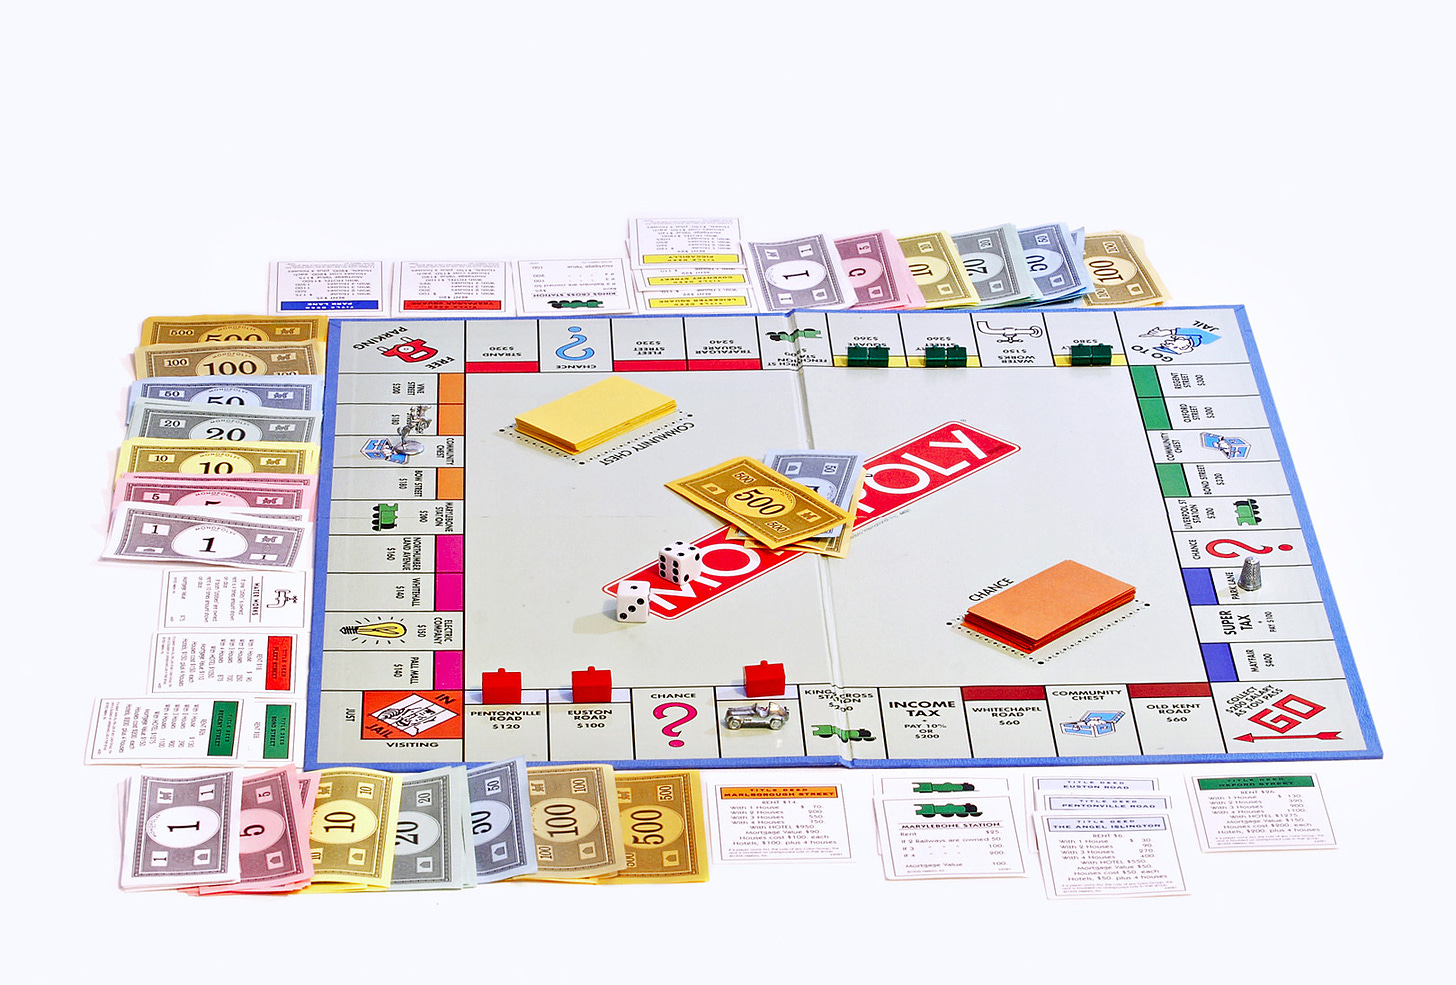 Monopoly - boardgame khiến người chơi gắn bó nhờ sự may rủi ngẫu nhiên